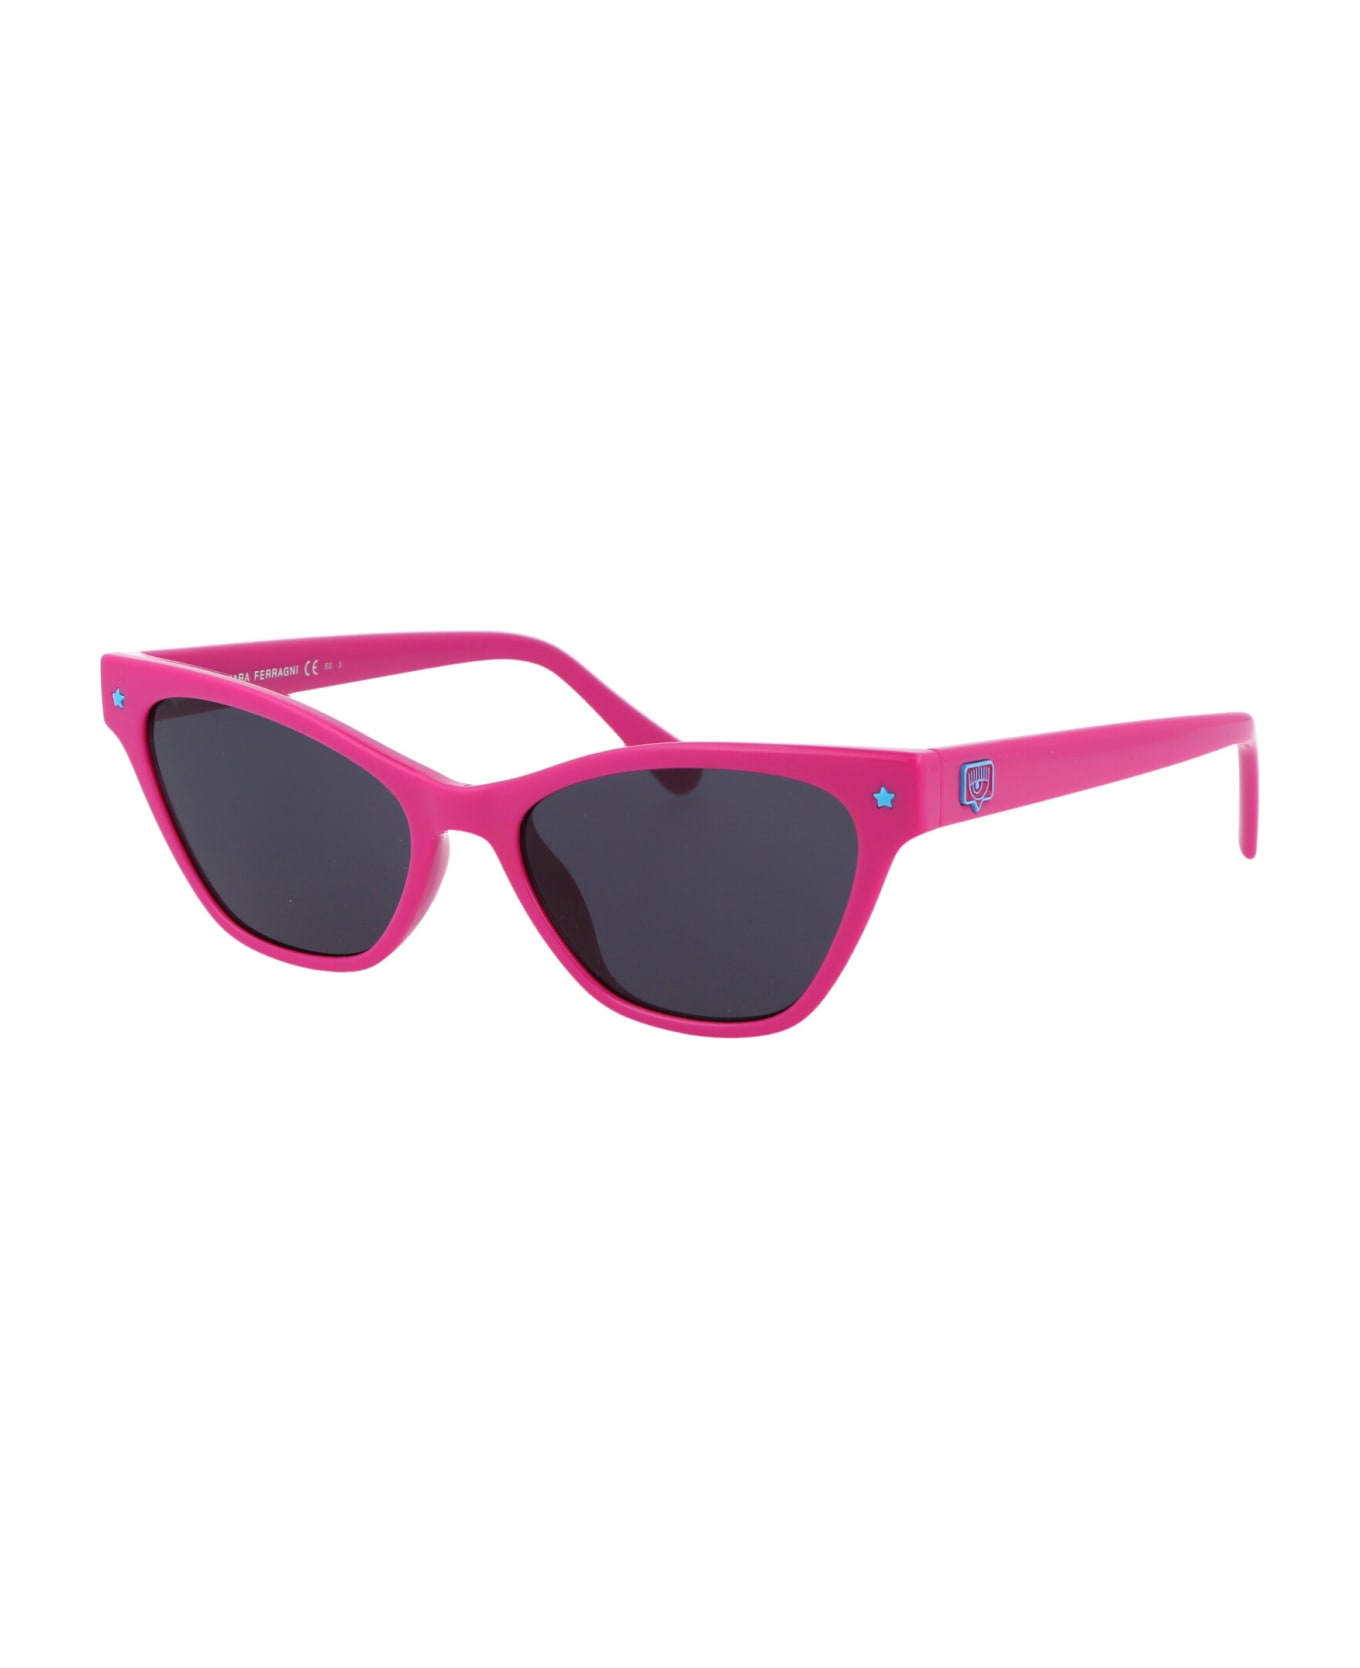 Chiara Ferragni Cf 1020/s Sunglasses - 35JIR PINK